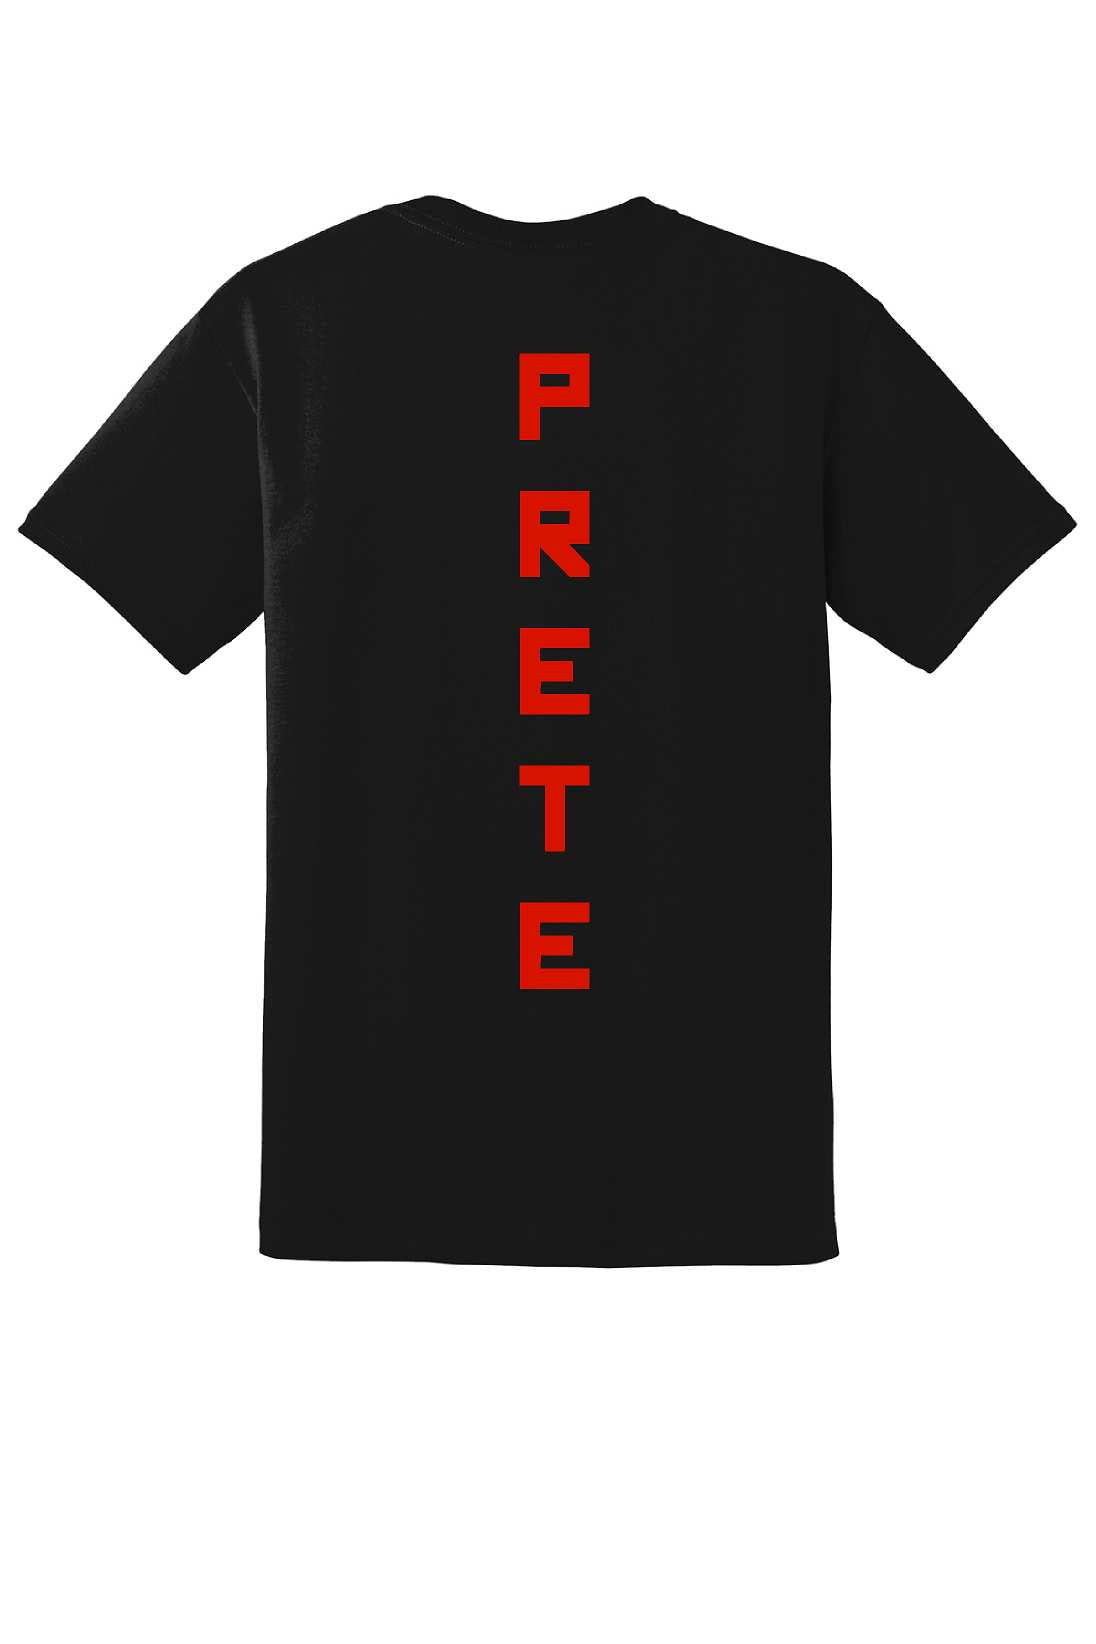 Tyler Prete tshirts, VE DT8000